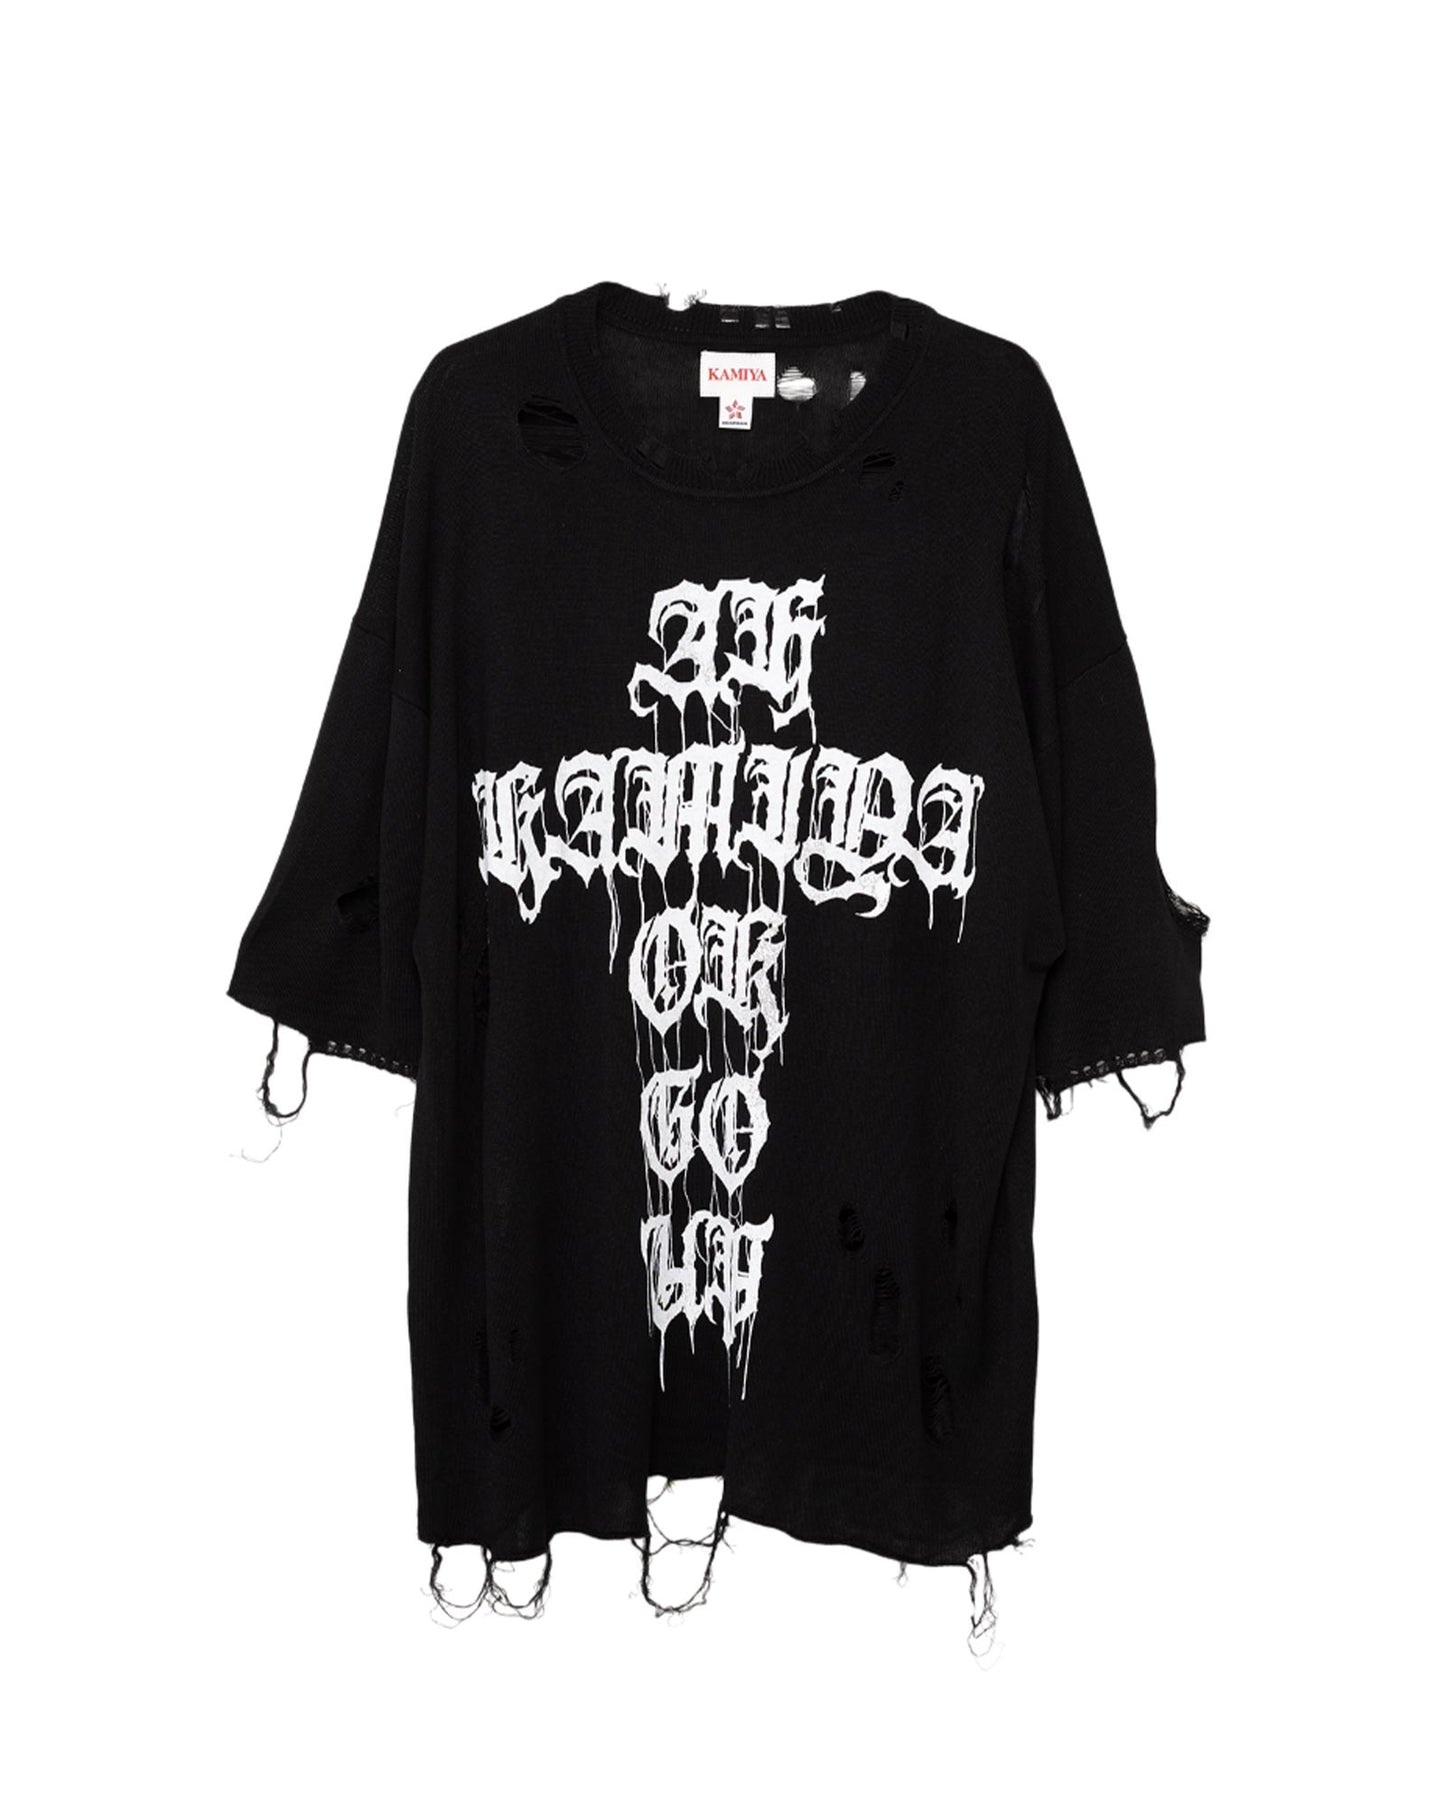 カミヤ/Printed Knit Tee/G12TS051/ニットTシャツ/Black